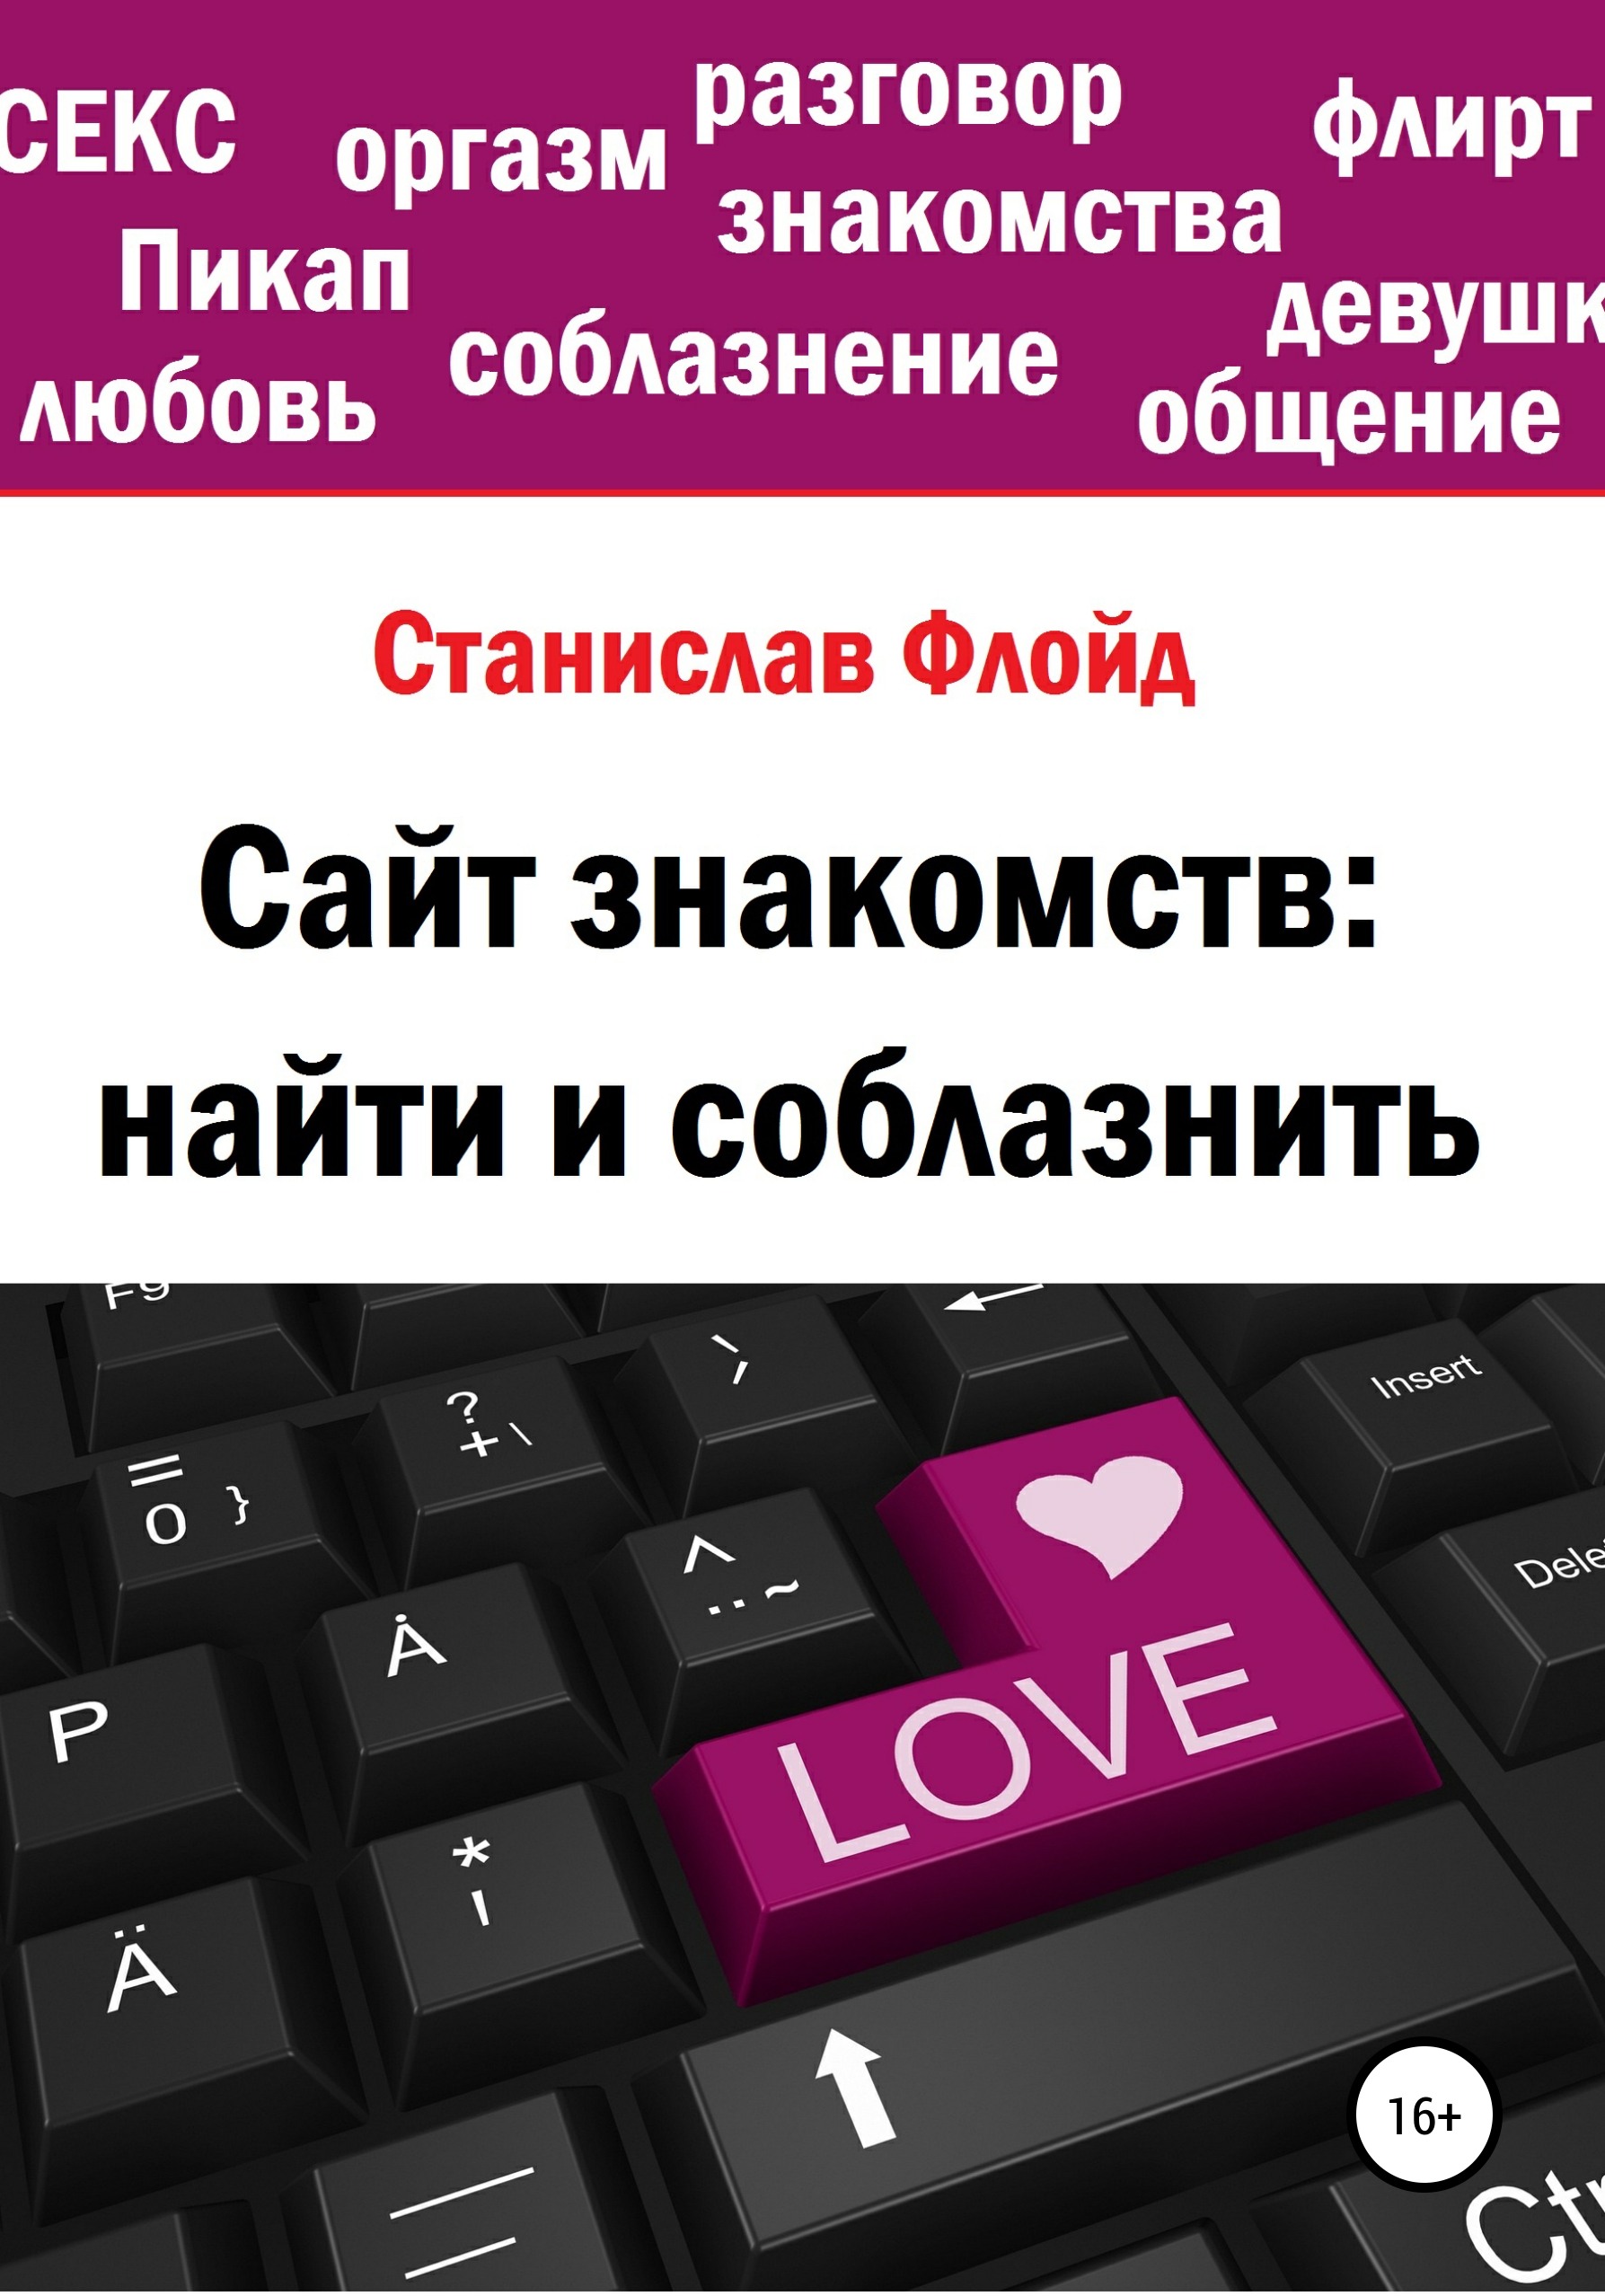 Знакомства - чат для виртуальной любви - на balagan-kzn.ru